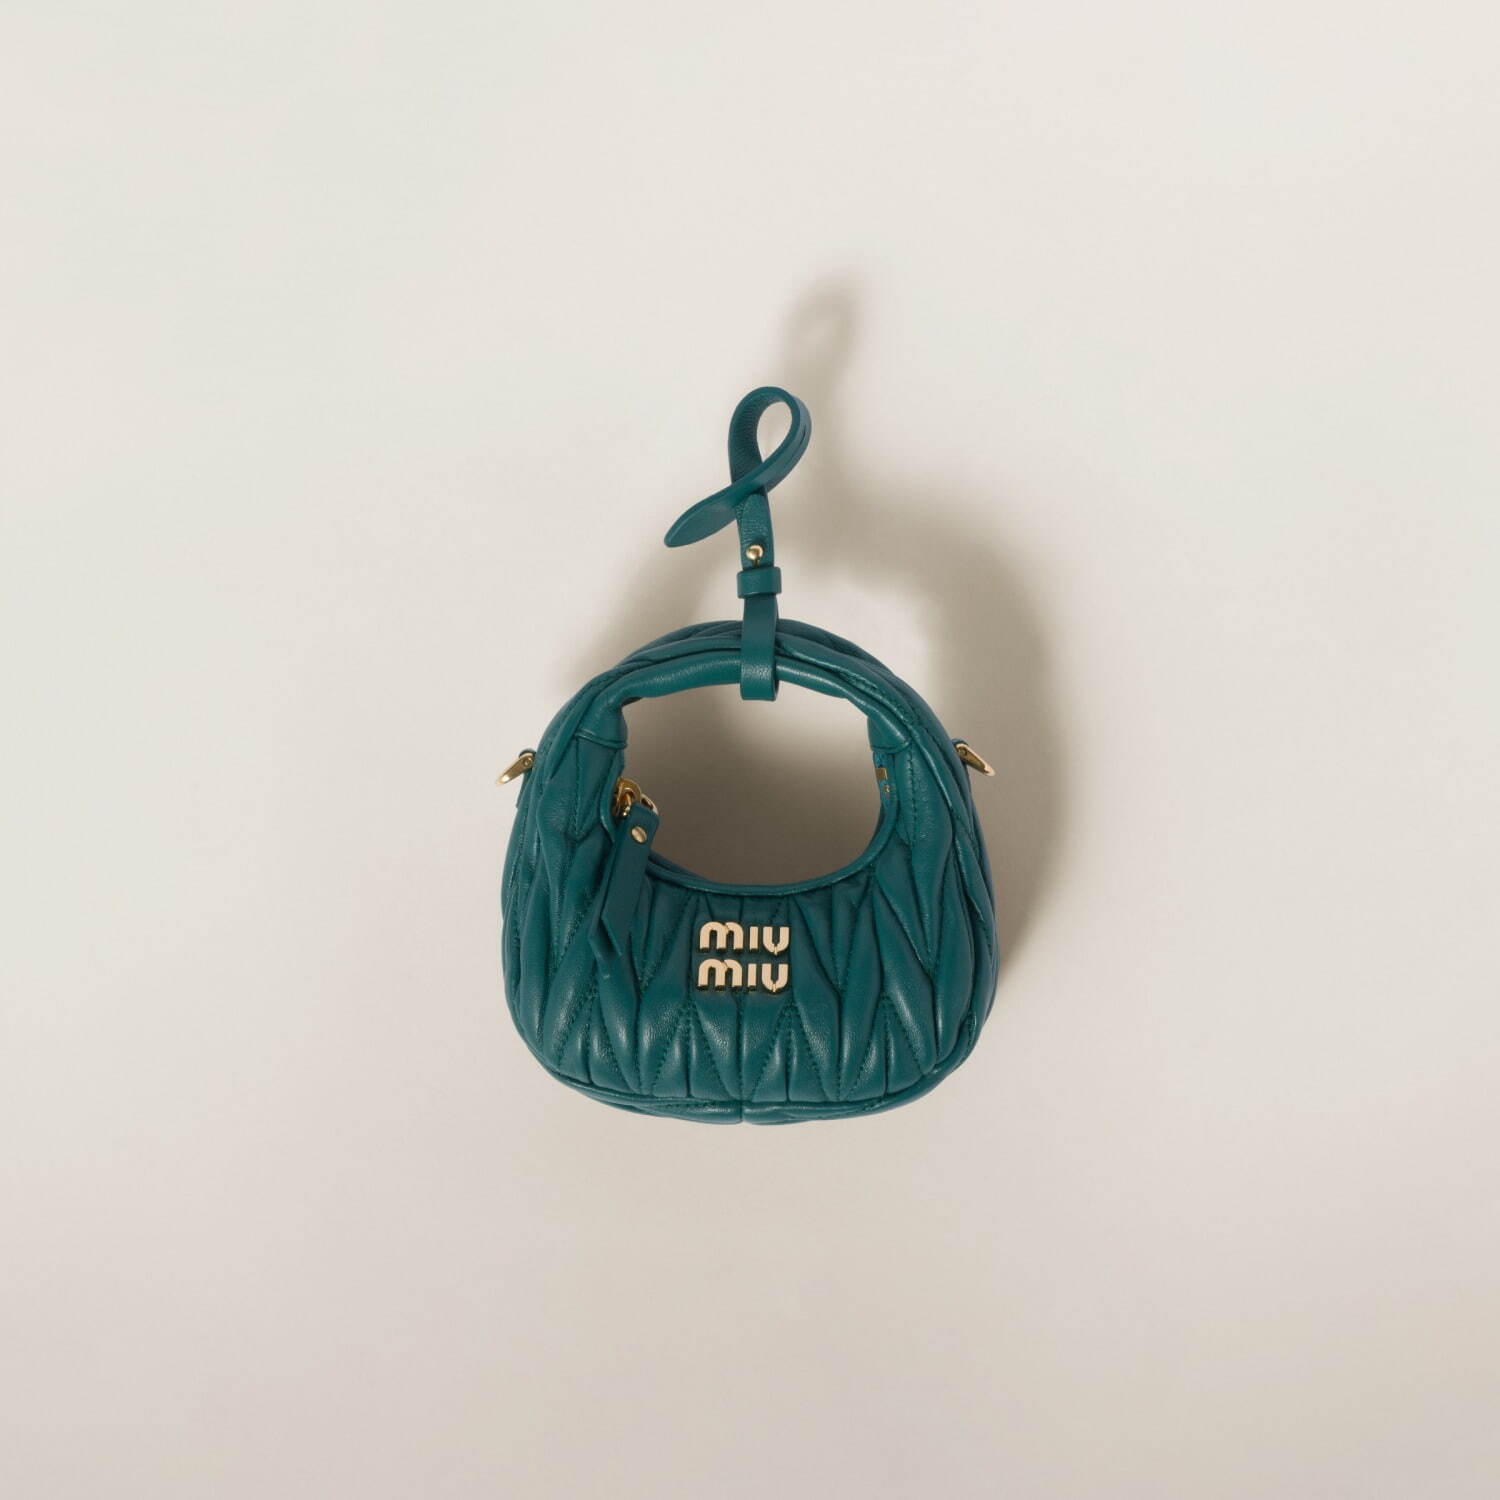 「ワンダー」マイクロミニバッグ ブルーグリーン 152,900円
※予定価格